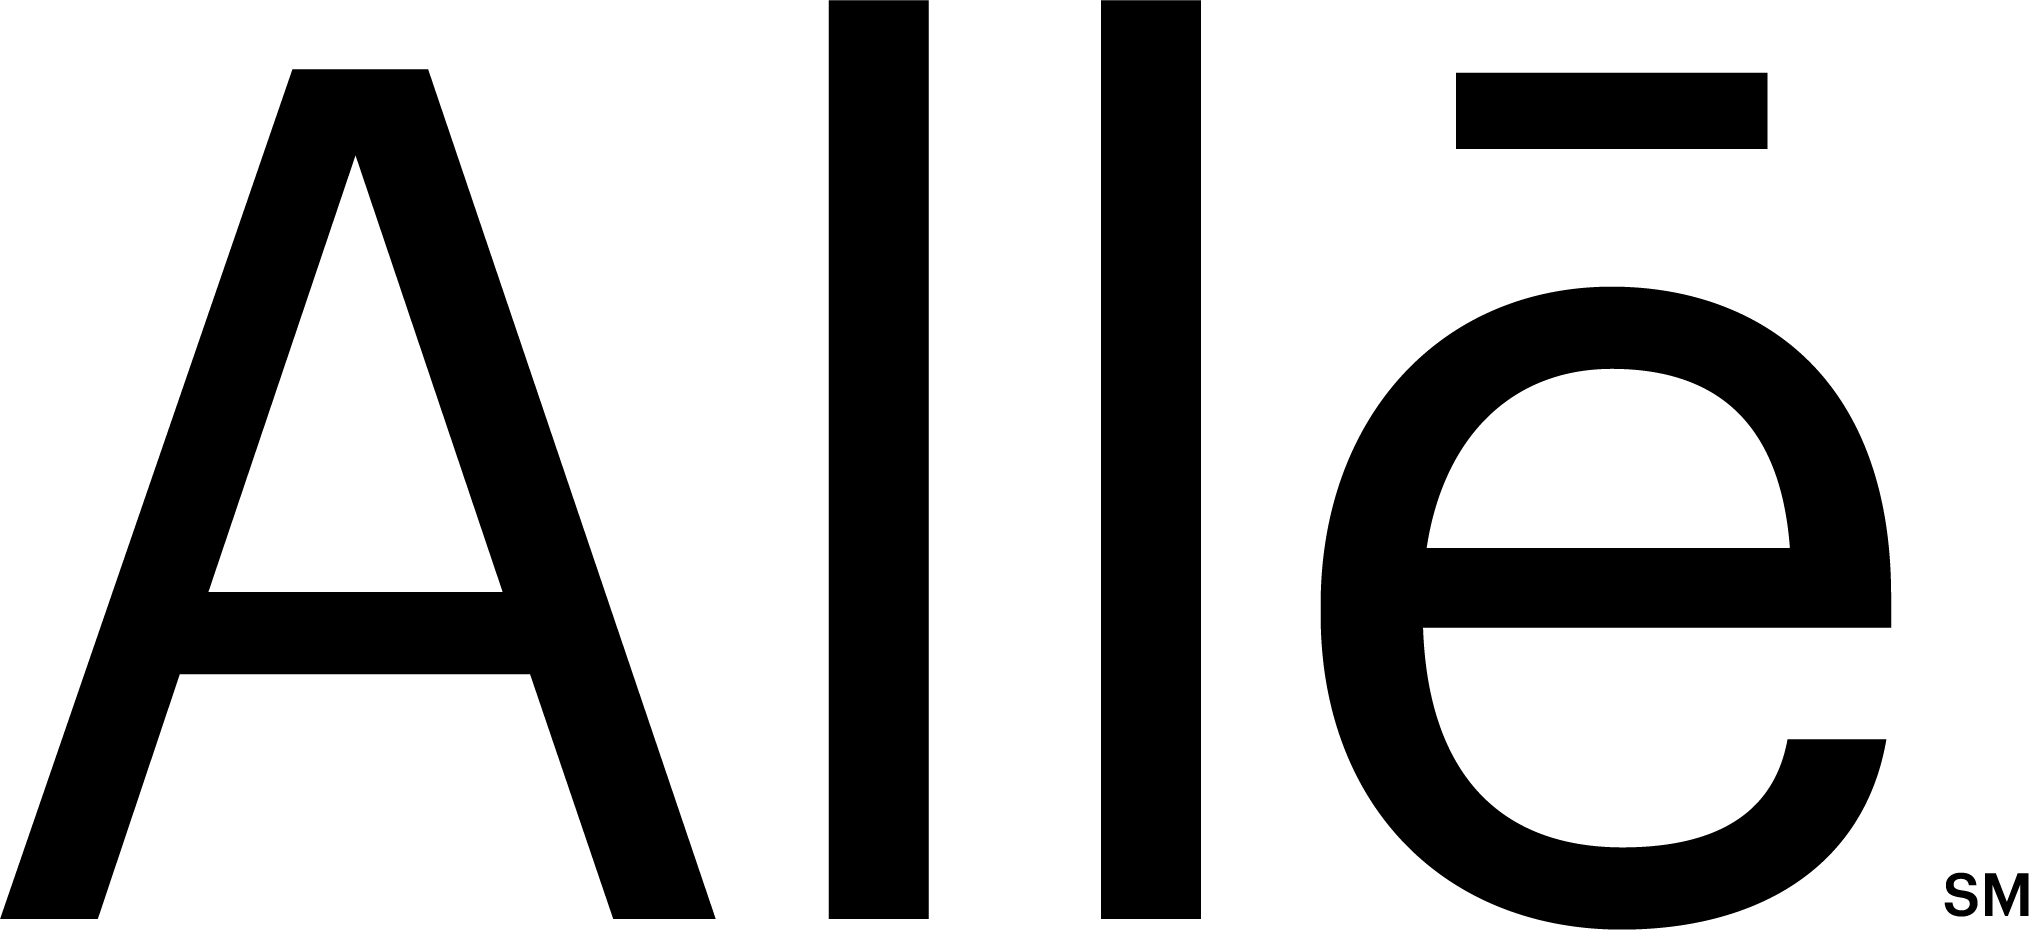 Allē logo